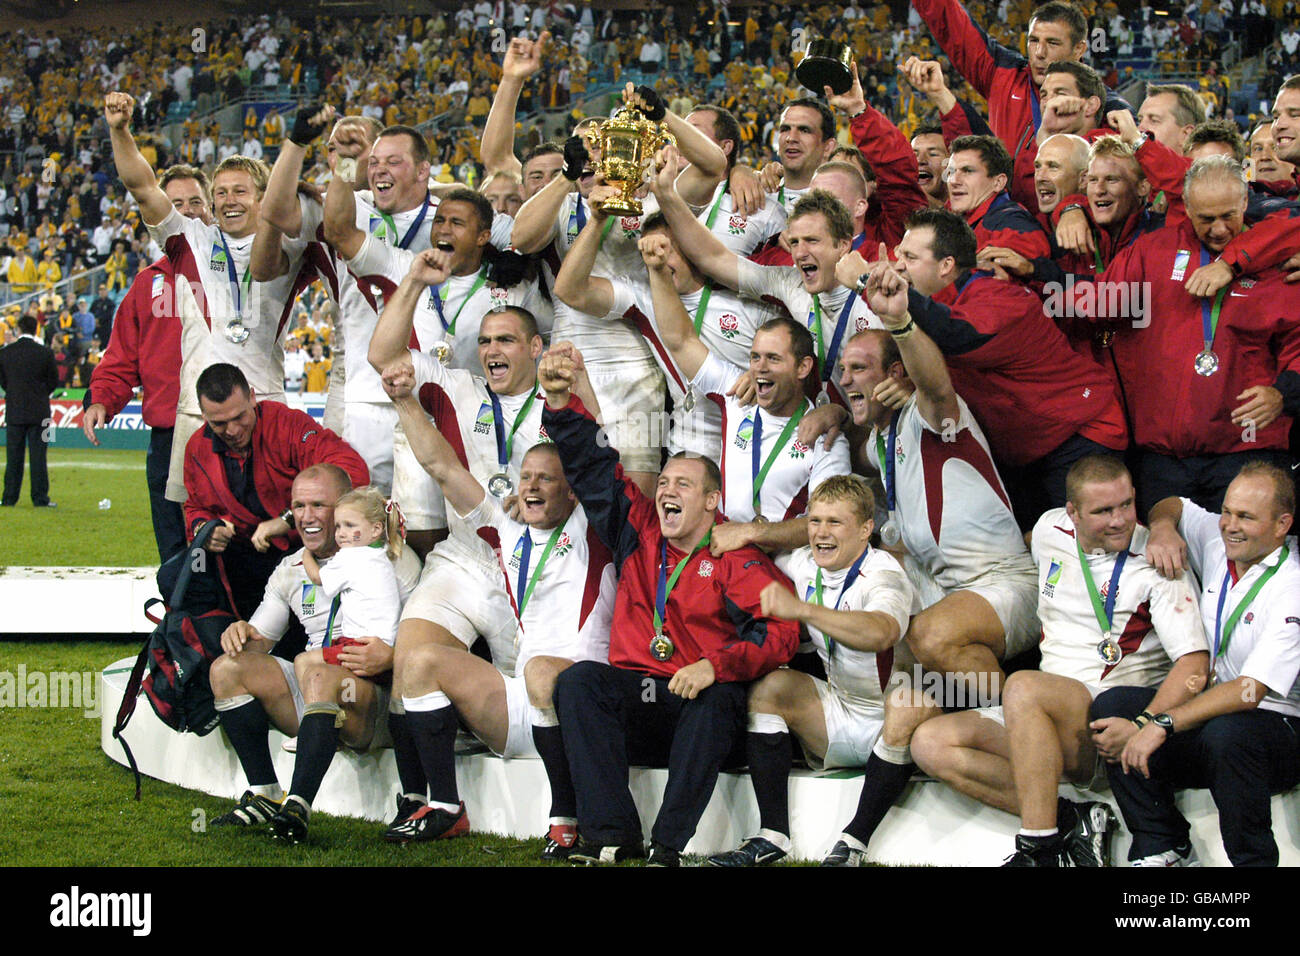 Rugby Union - Coppa del mondo 2003 - finale - Inghilterra / Australia. I giocatori inglesi festeggiano con il trofeo William Webb Ellis Foto Stock